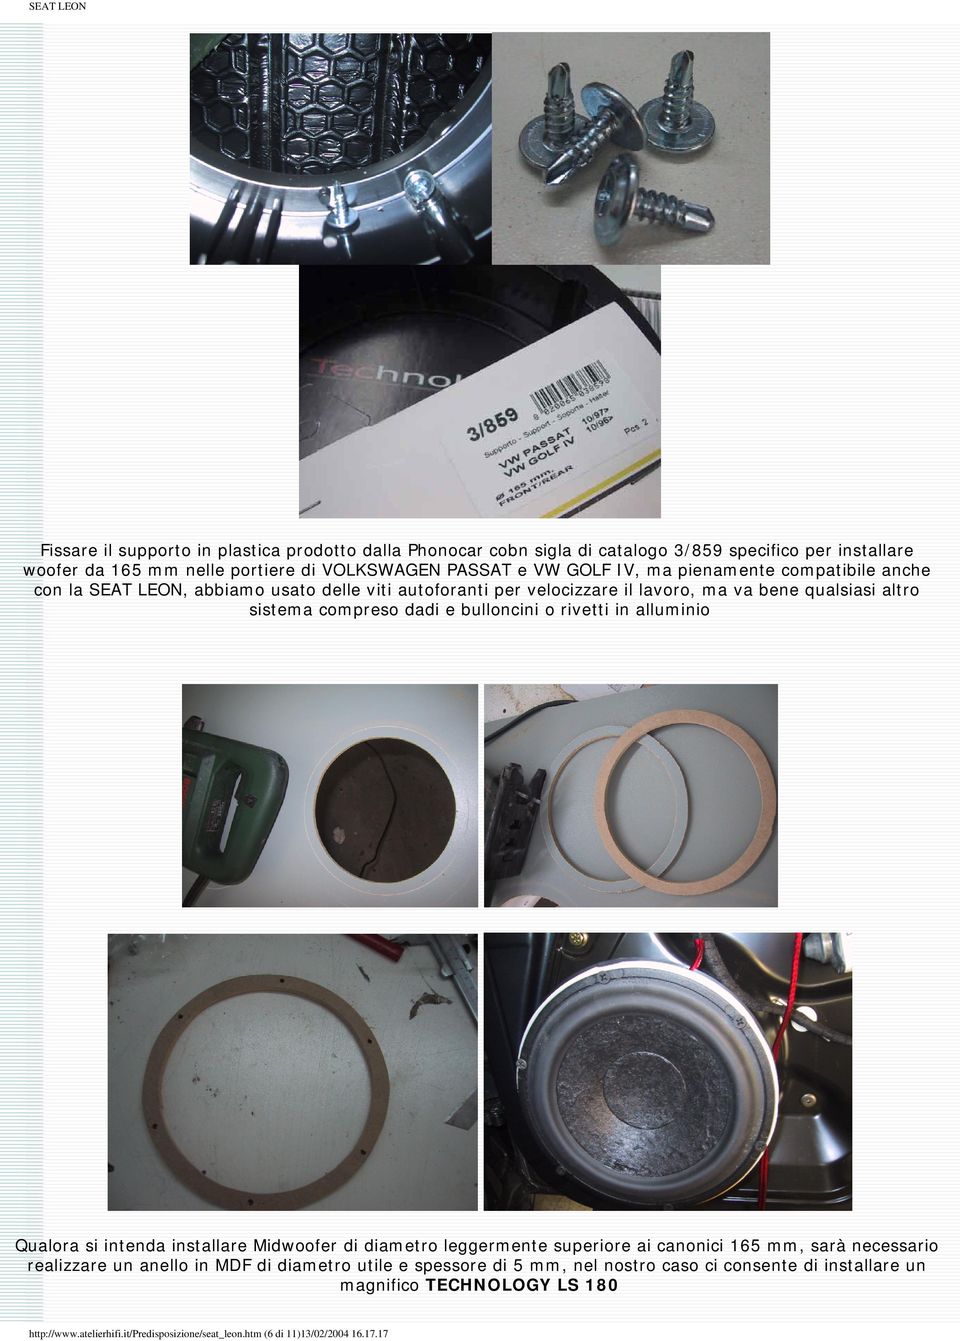 rivetti in alluminio Qualora si intenda installare Midwoofer di diametro leggermente superiore ai canonici 165 mm, sarà necessario realizzare un anello in MDF di diametro utile